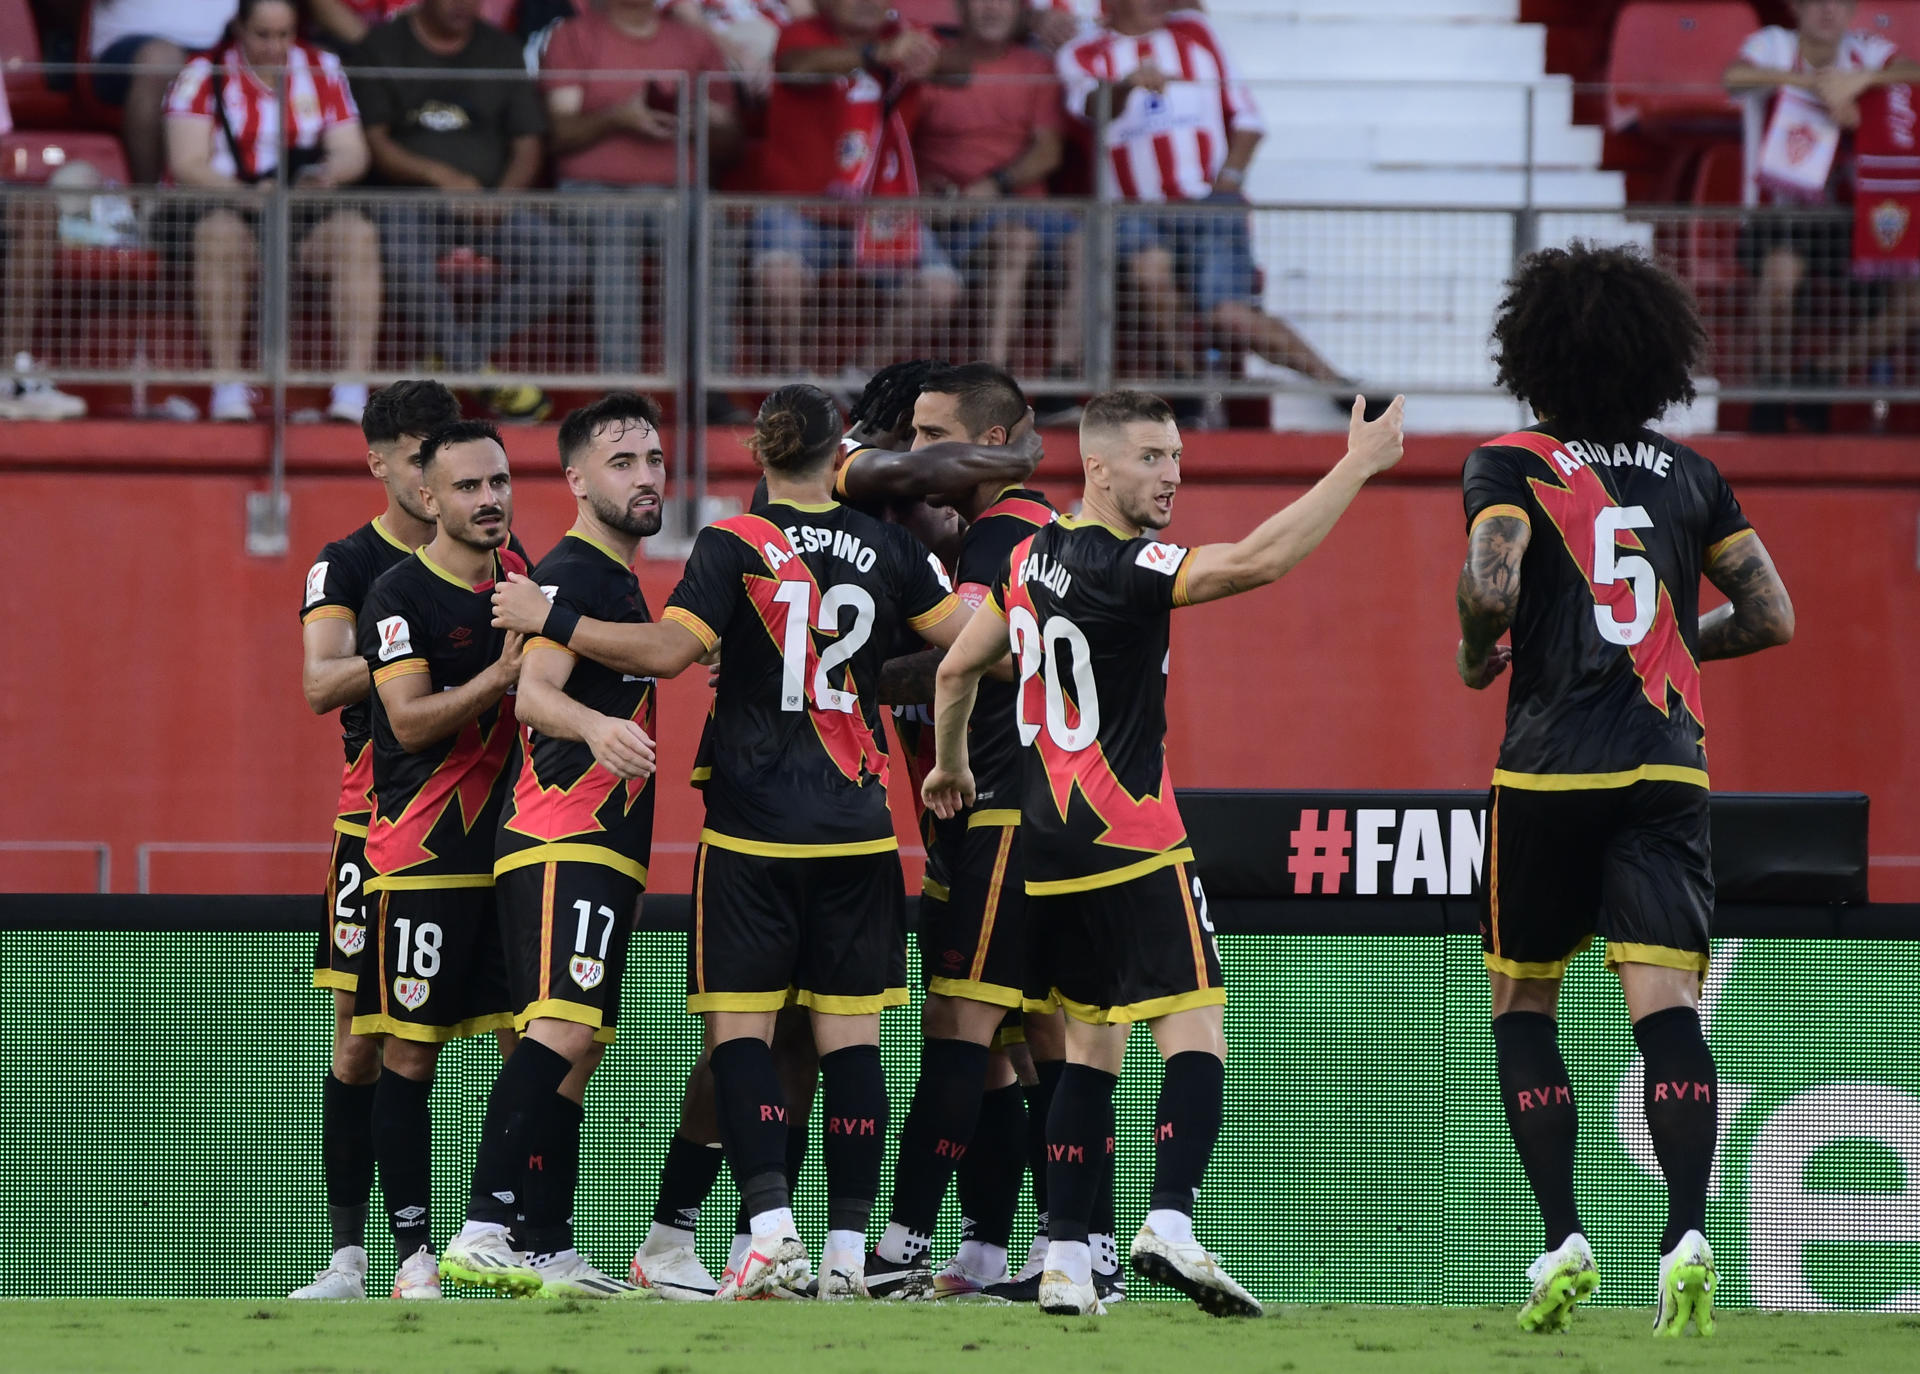 Los jugadores del Rayo Vallecano celebran el segundo gol de su equipo durante el partido de LaLiga entre el Almería y el Rayo Vallecano, este viernes en el Power Horse Stadium de Almería. EFE / Carlos Barba